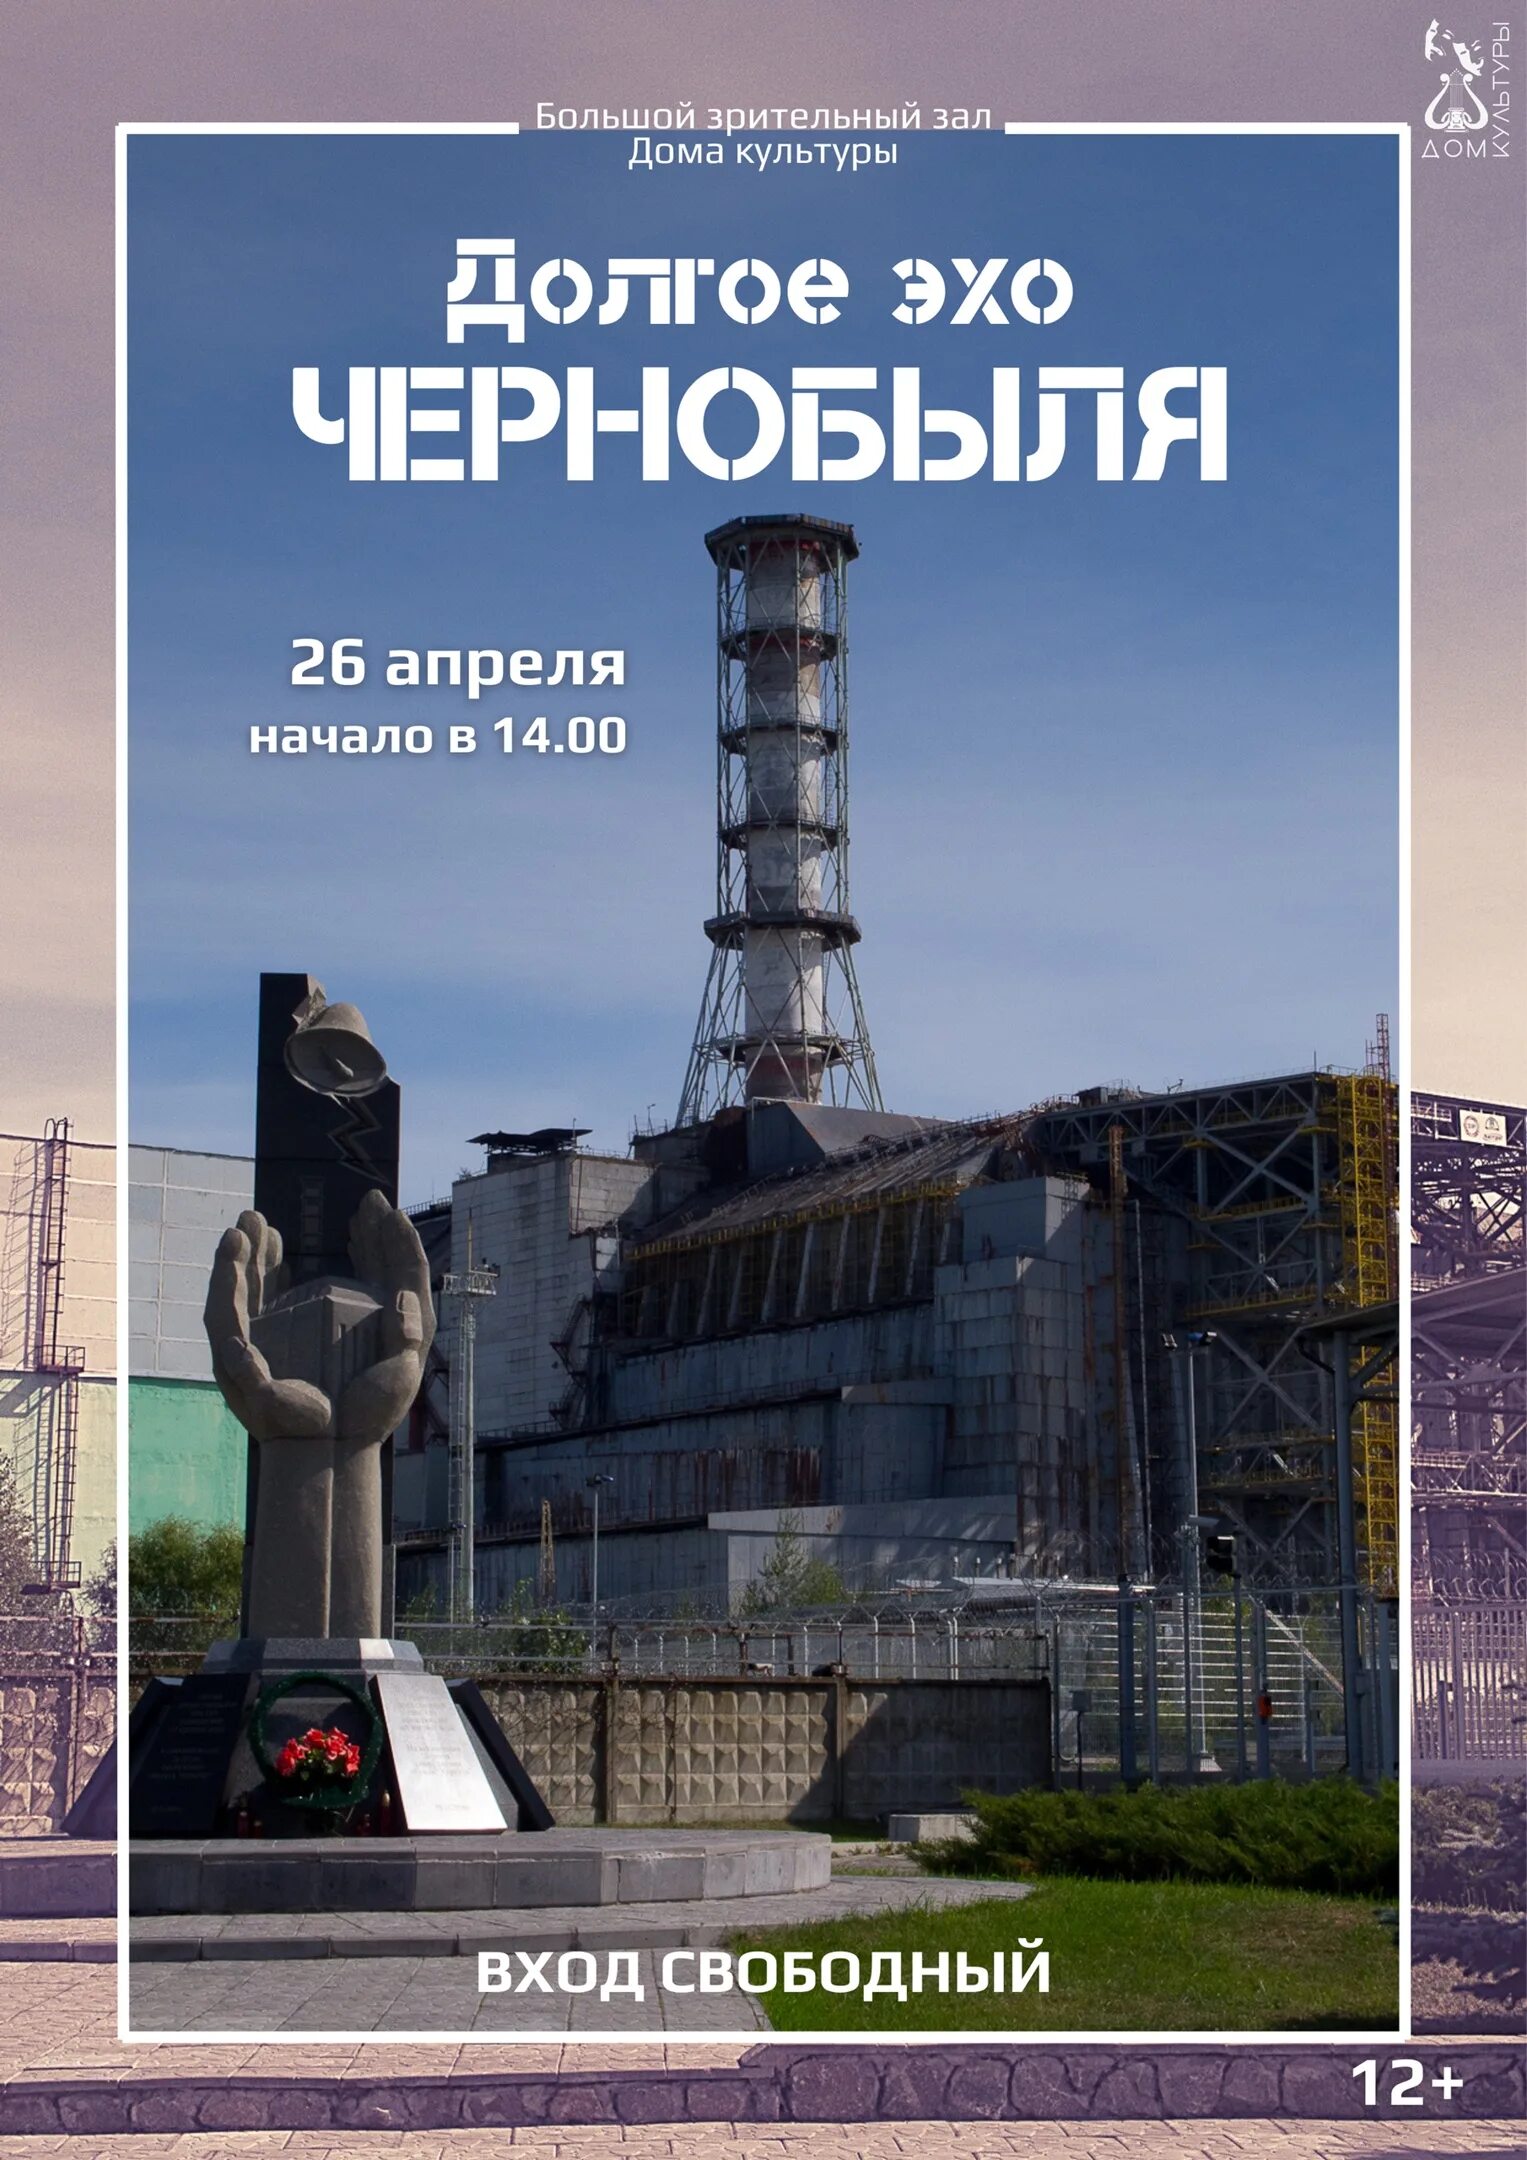 Картинка 26 апреля. Чернобыльская АЭС 26.04. Долгое Эхо Чернобыля. 26 Апреля Чернобыль. 26 Апреля 1986 года.